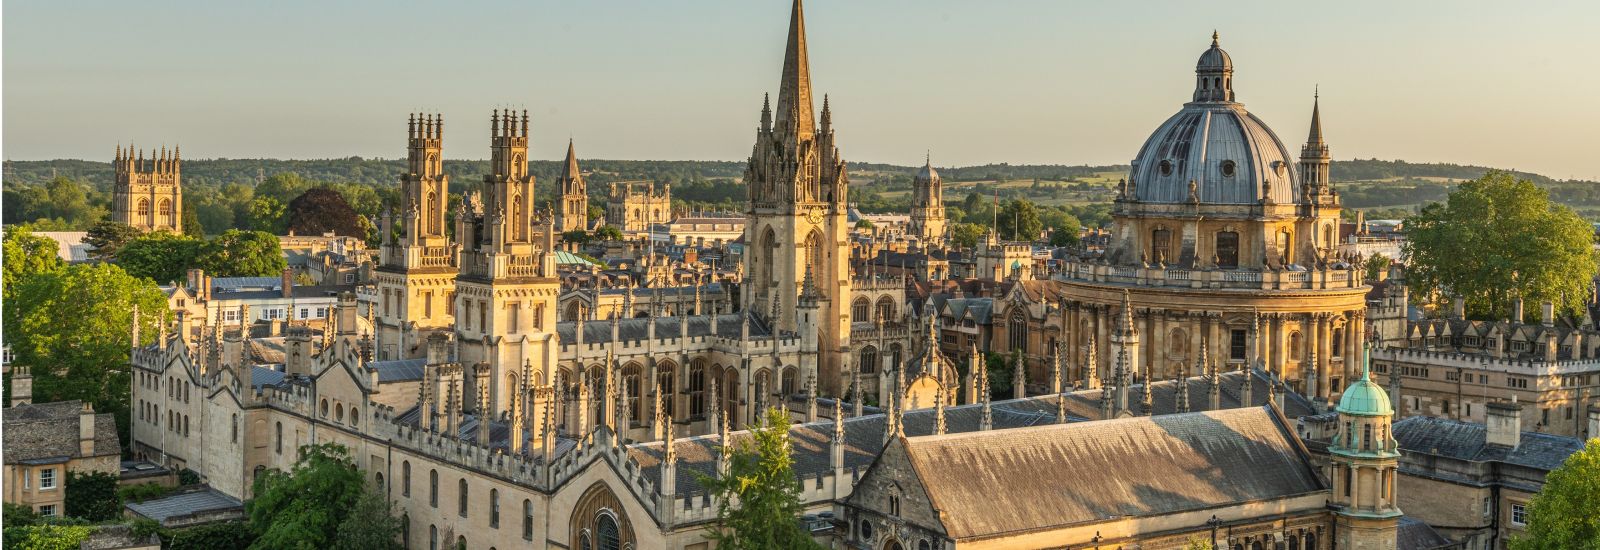 Photograph of Oxford University skyline